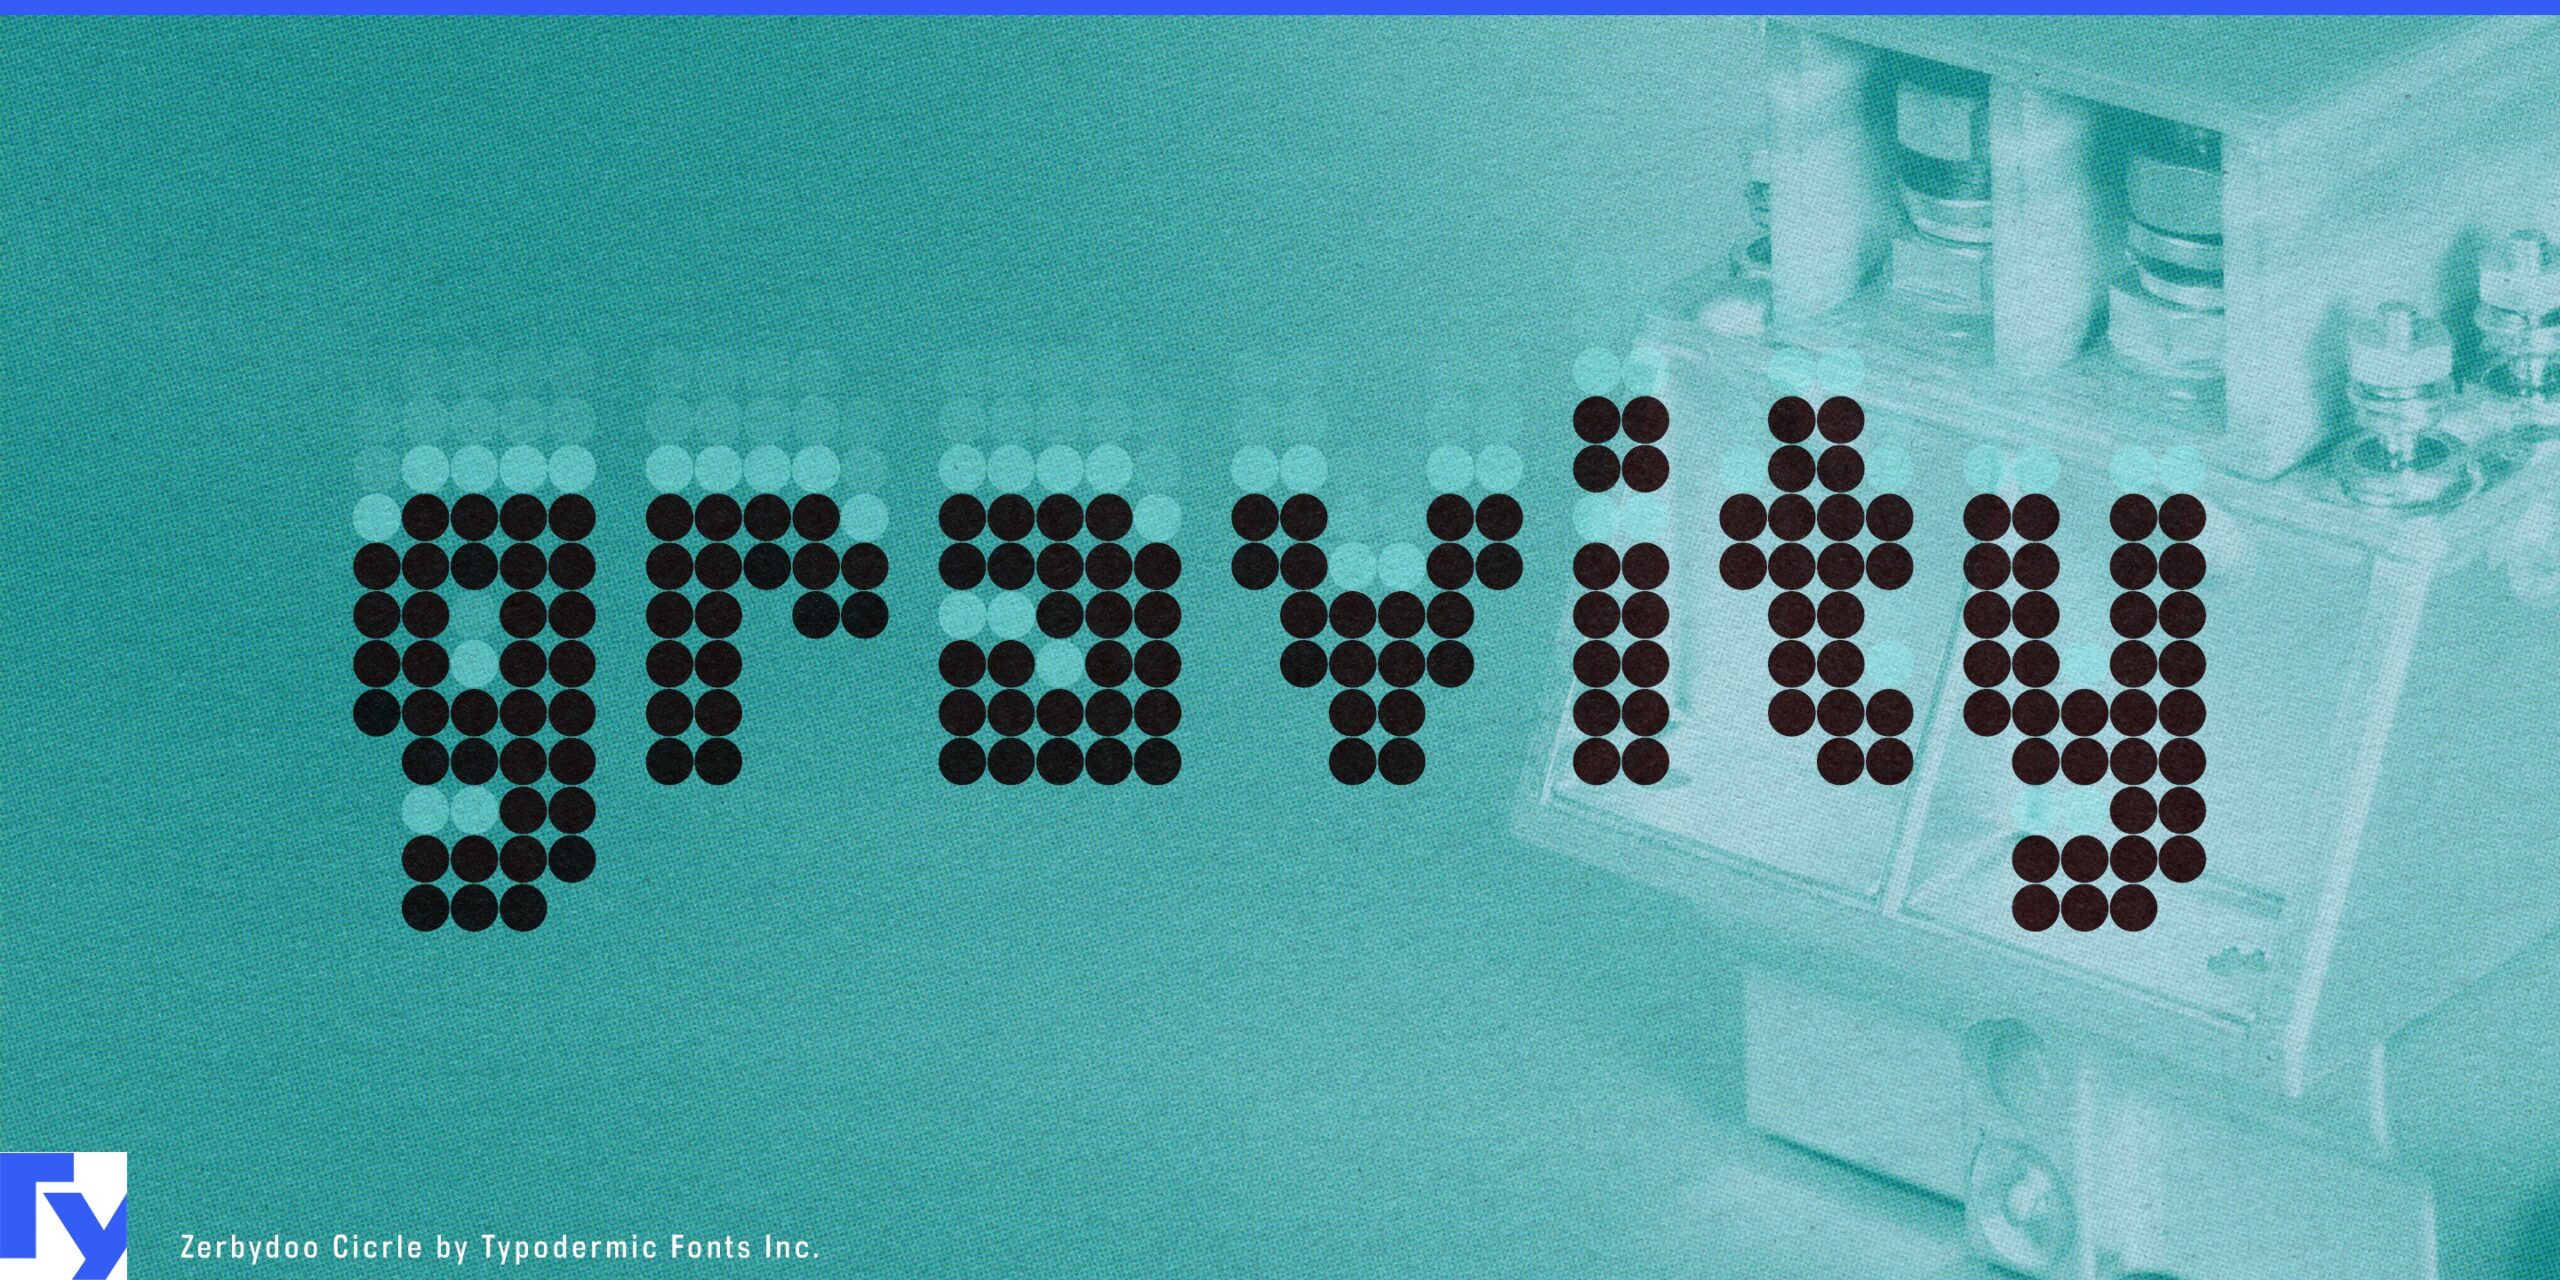 Pixel-Font Wonderland: Zerbydoo Typeface Ignites Design